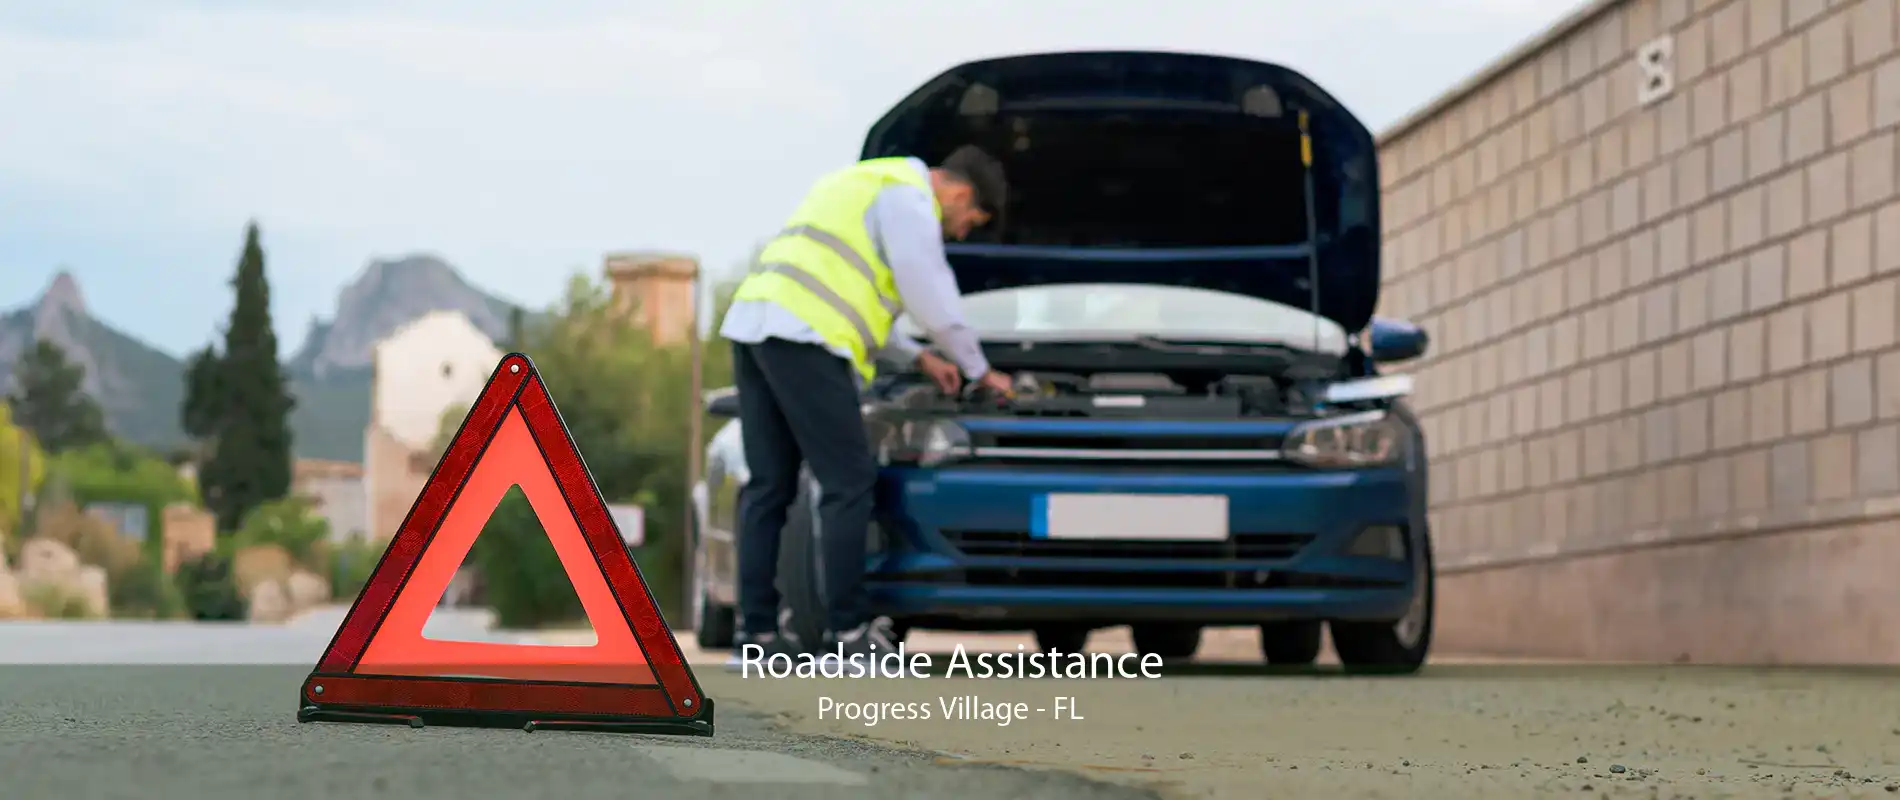 Roadside Assistance Progress Village - FL